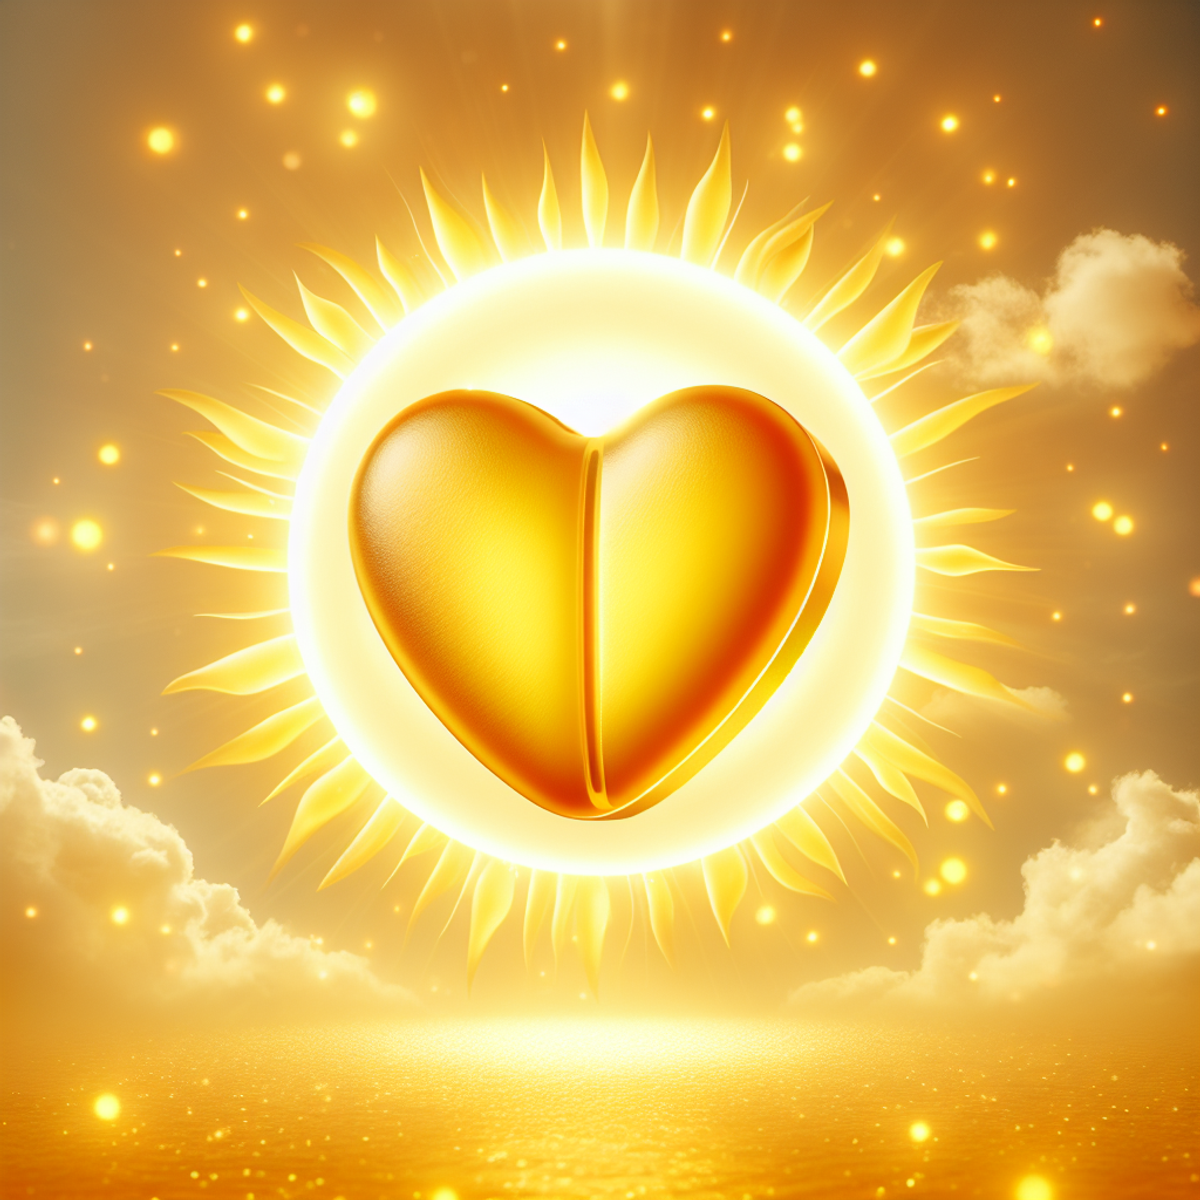 Witamina D3 w kształcie serca wygrzewając się w blasku promiennego słońca.